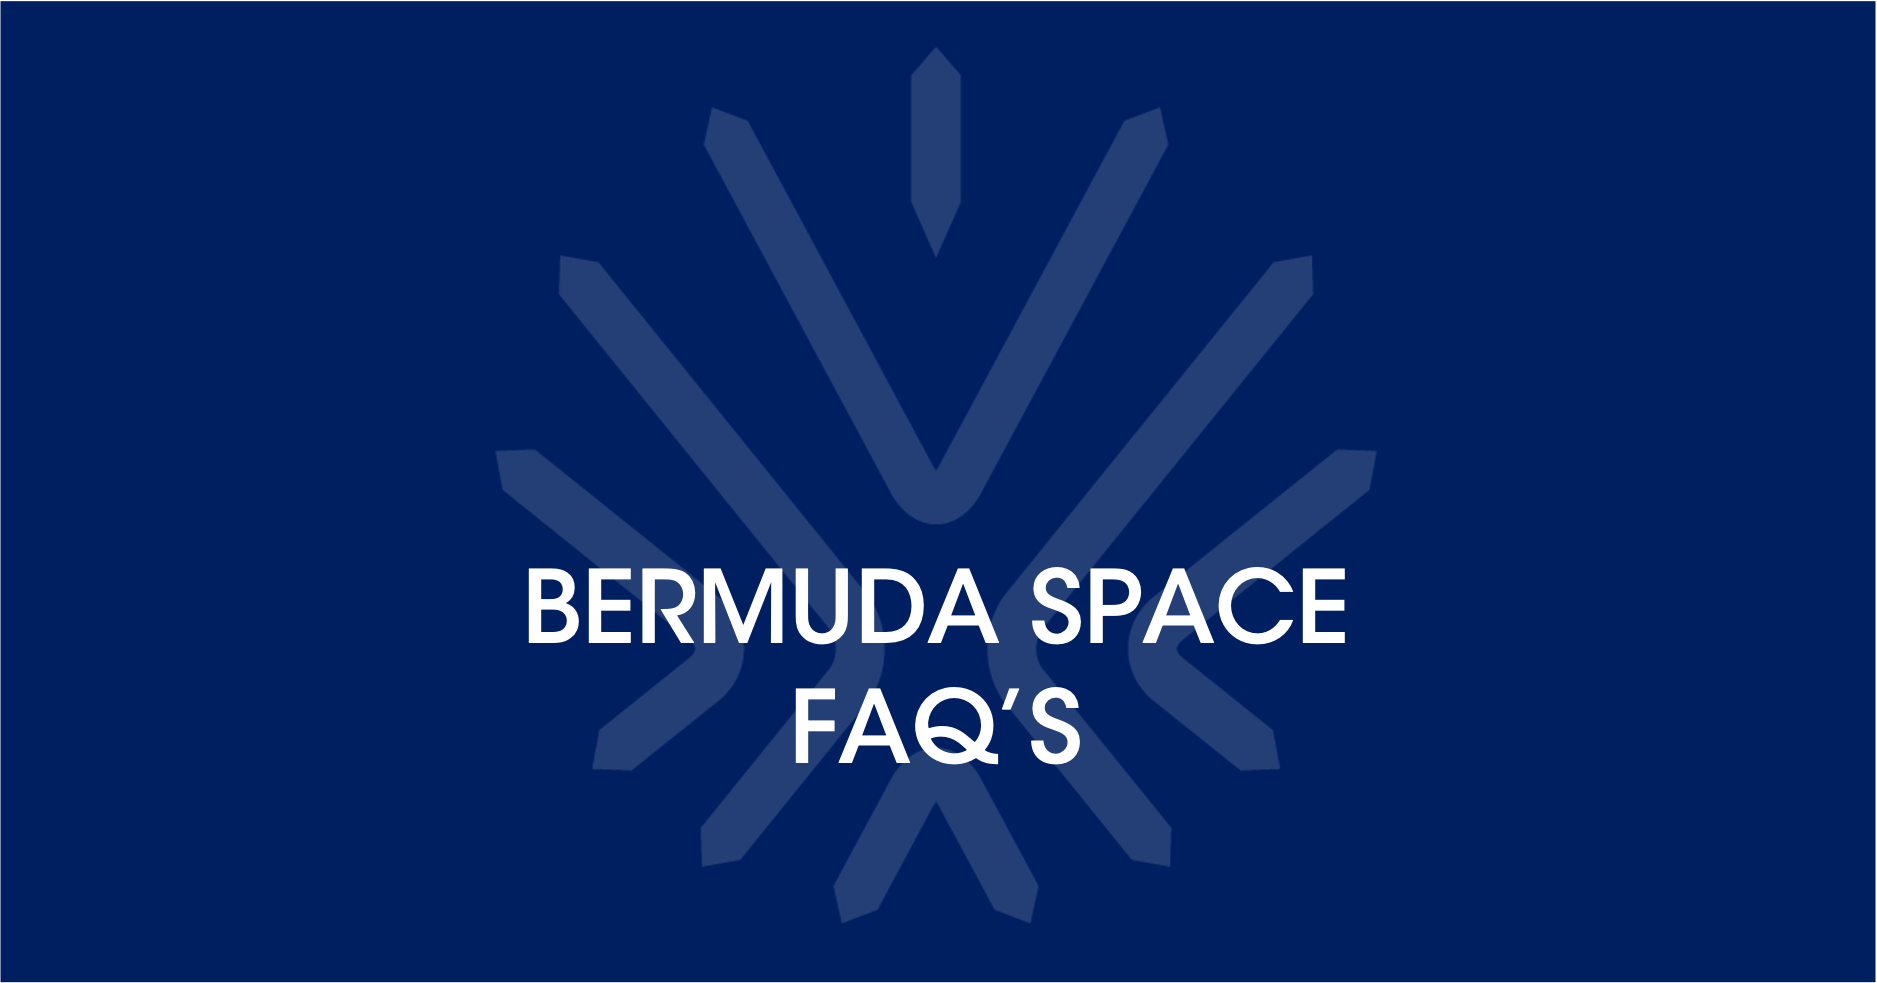 Bermuda Space FAQ’s